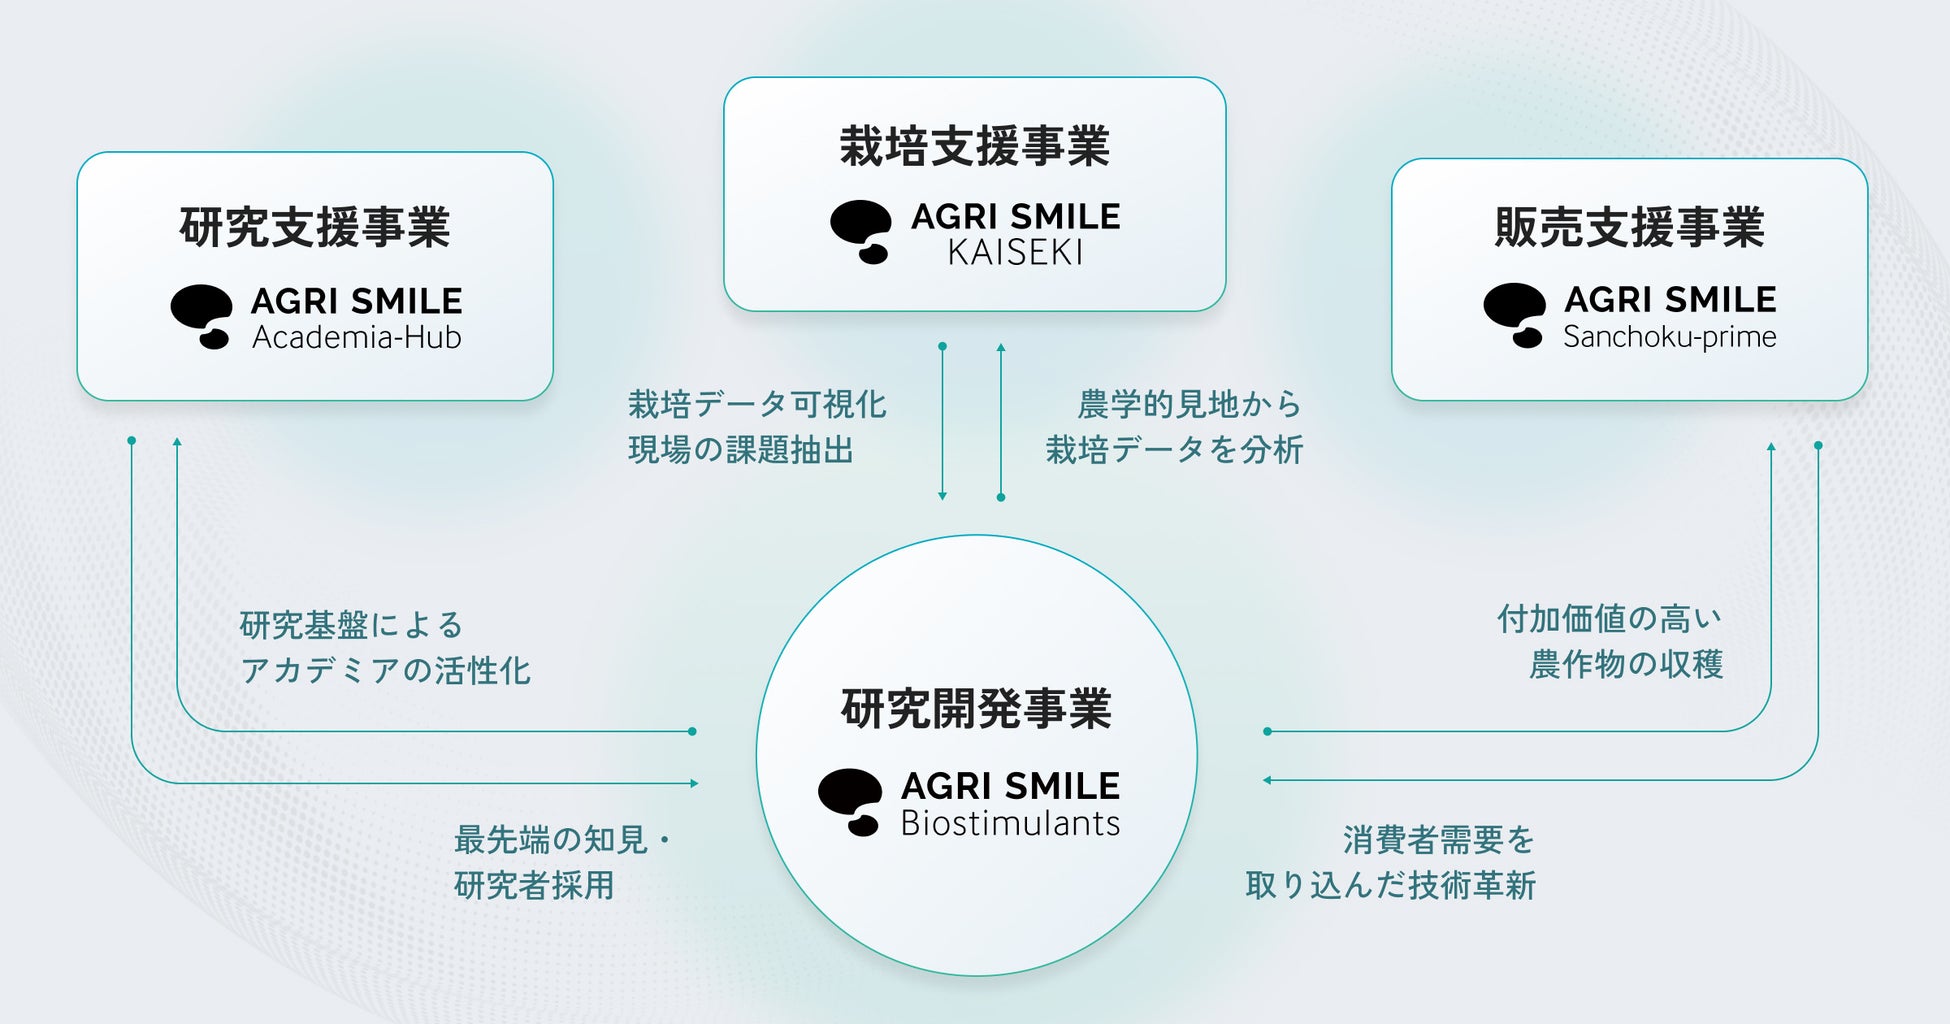 持続可能な農業を創造するAGRI SMILE、約7.5億円のシリーズA資金調達を実施し、累計調達額は約9.2億円に到達のサブ画像2